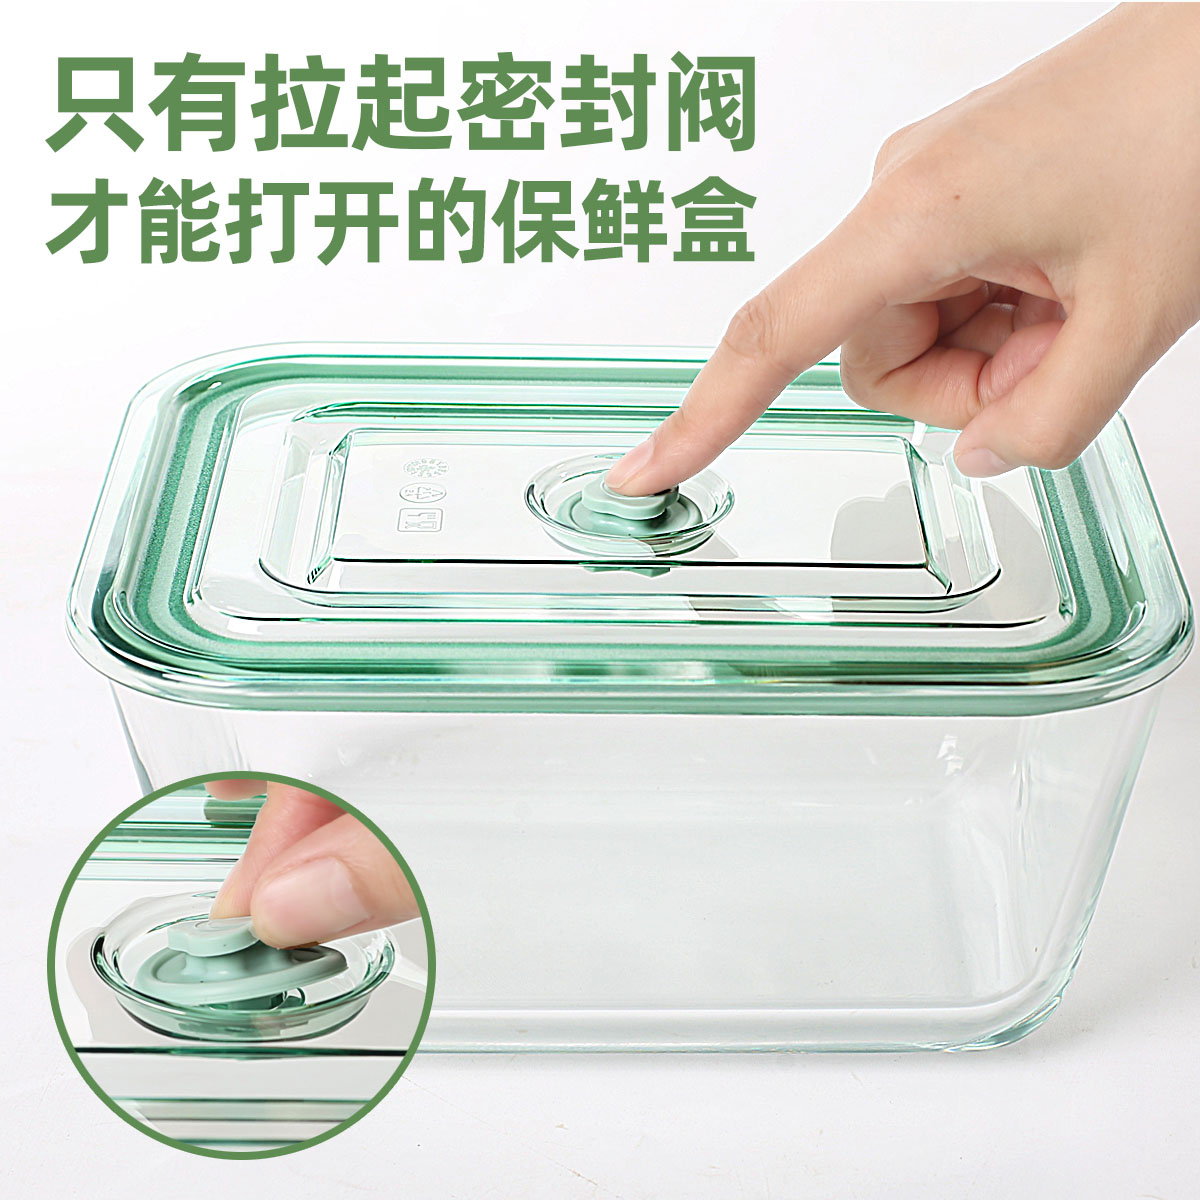 创得大容量玻璃保鲜盒食品级泡菜腌菜餐盒冰箱带盖水果收纳盒 - 图1